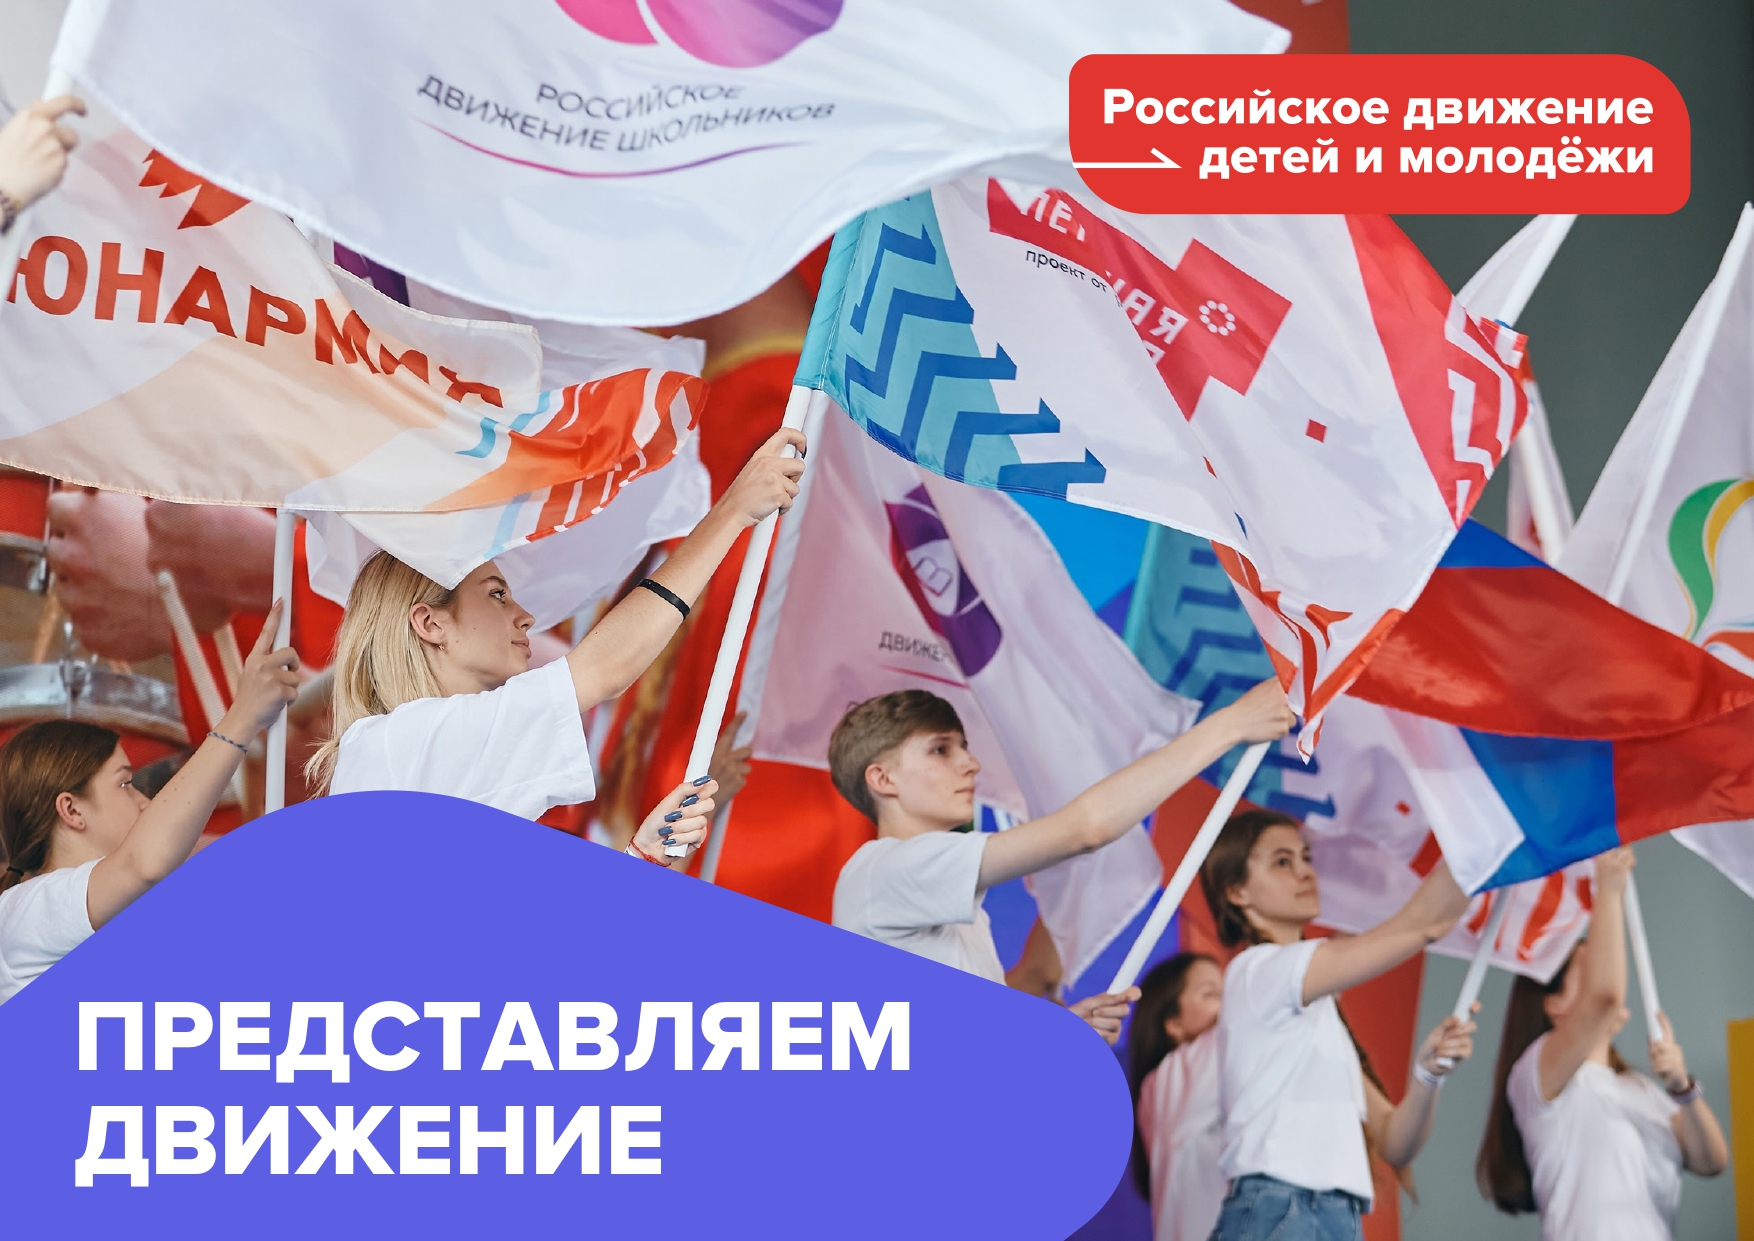 Будь в движении первый рф. Российское движение детей. Российское движение молодежи. Российское движение детей и молодежи. Молодежные движения в России.